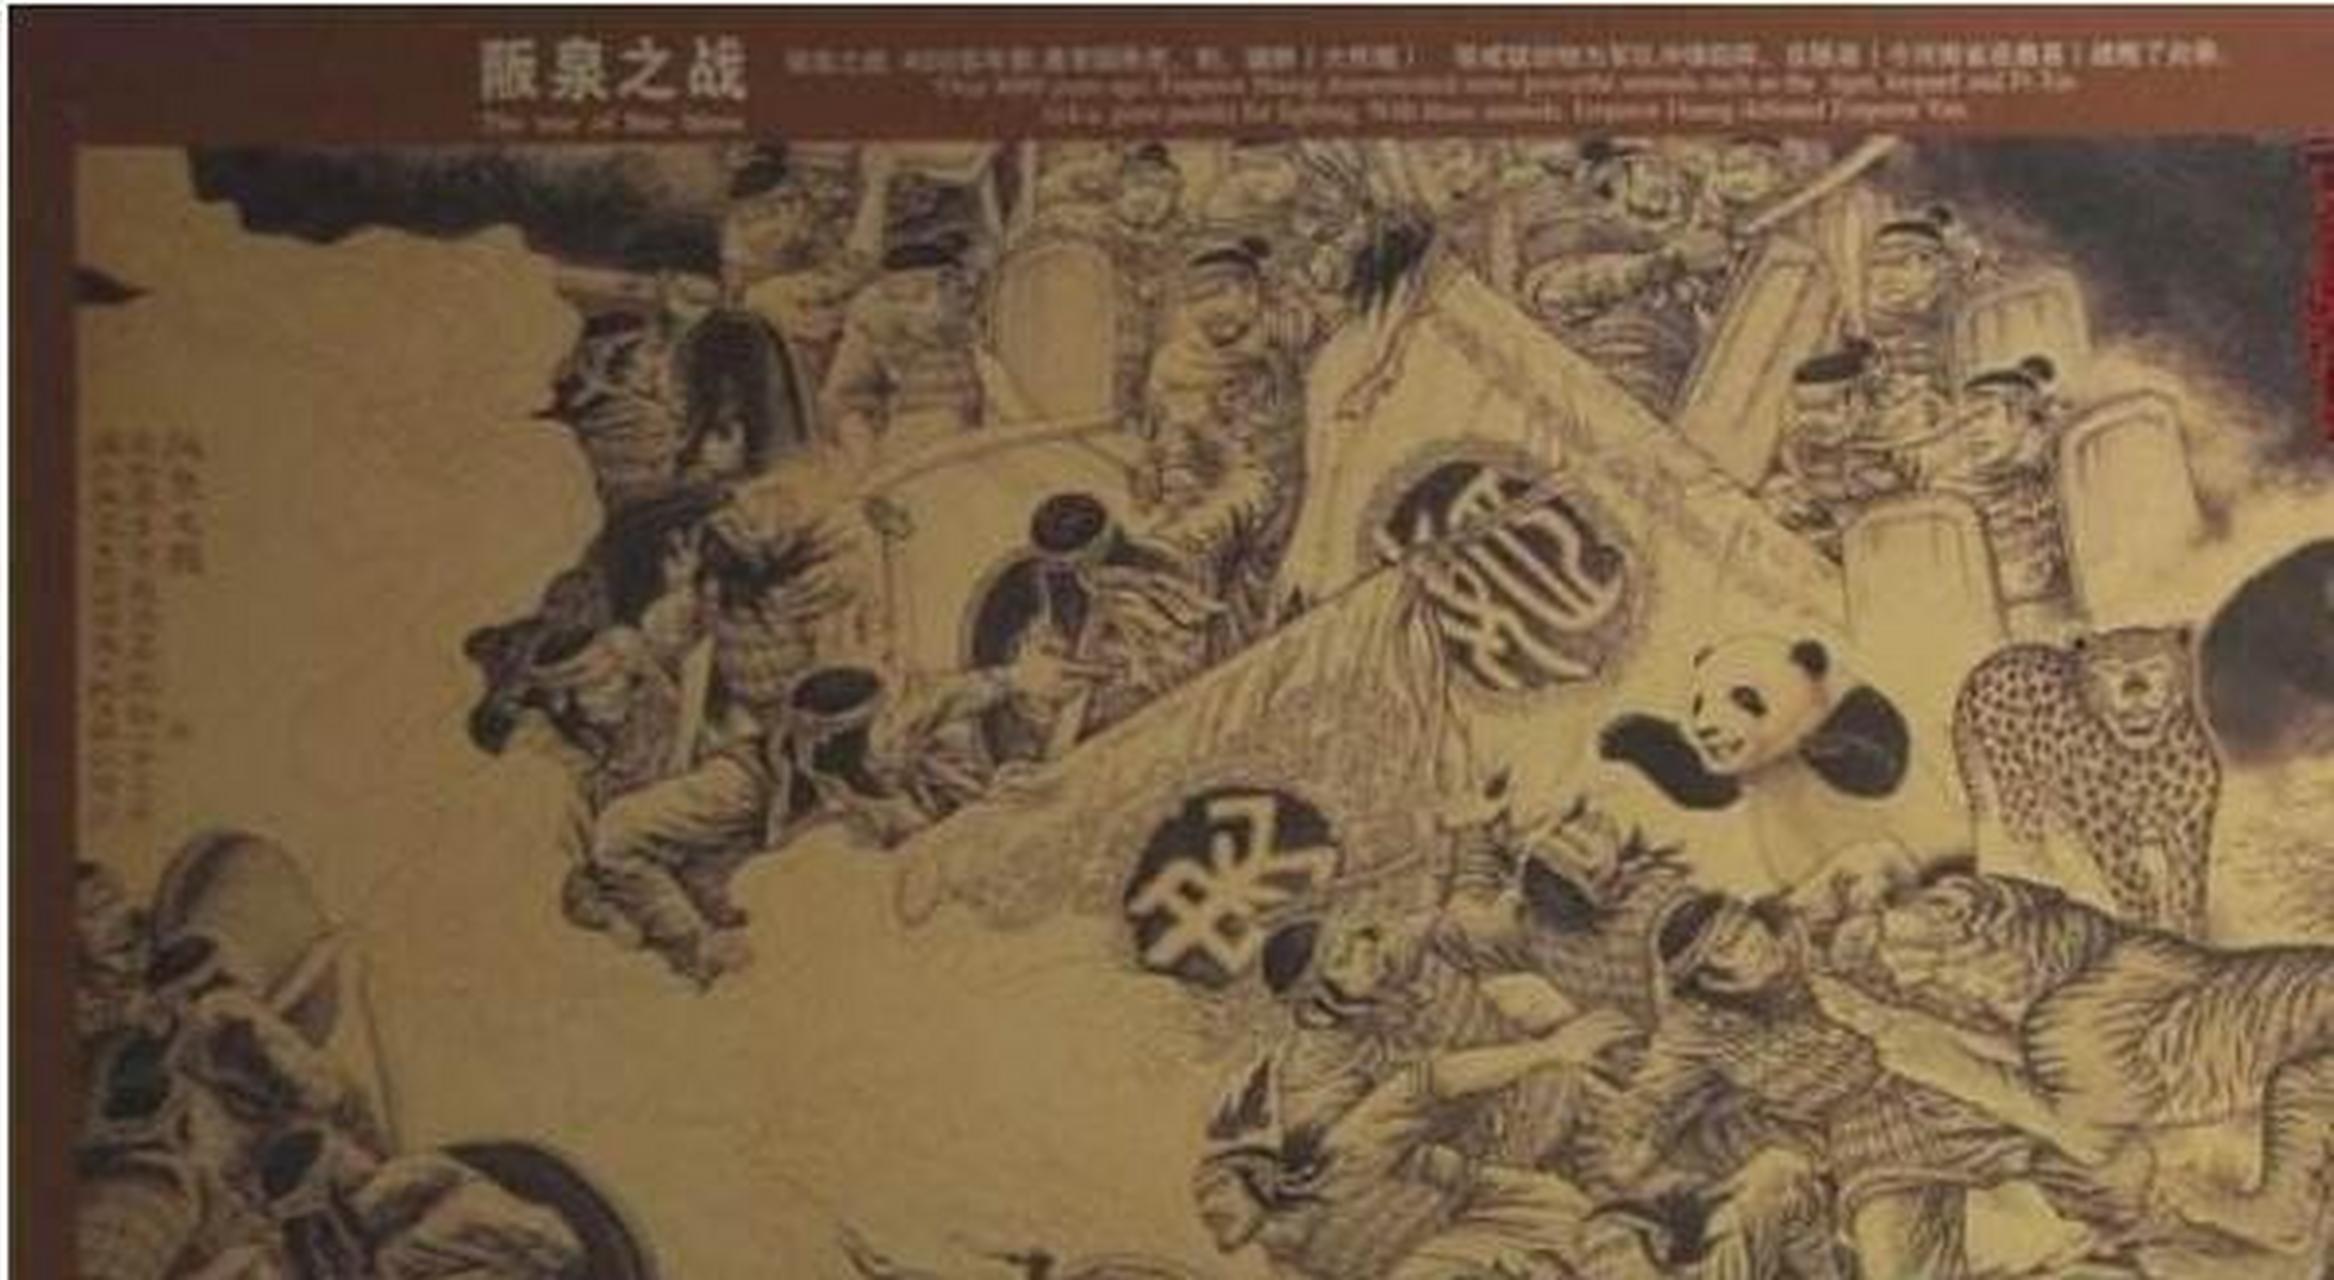 《阪泉之战》,描绘的是上古时期黄帝和炎帝之间的一场战争,可是令人